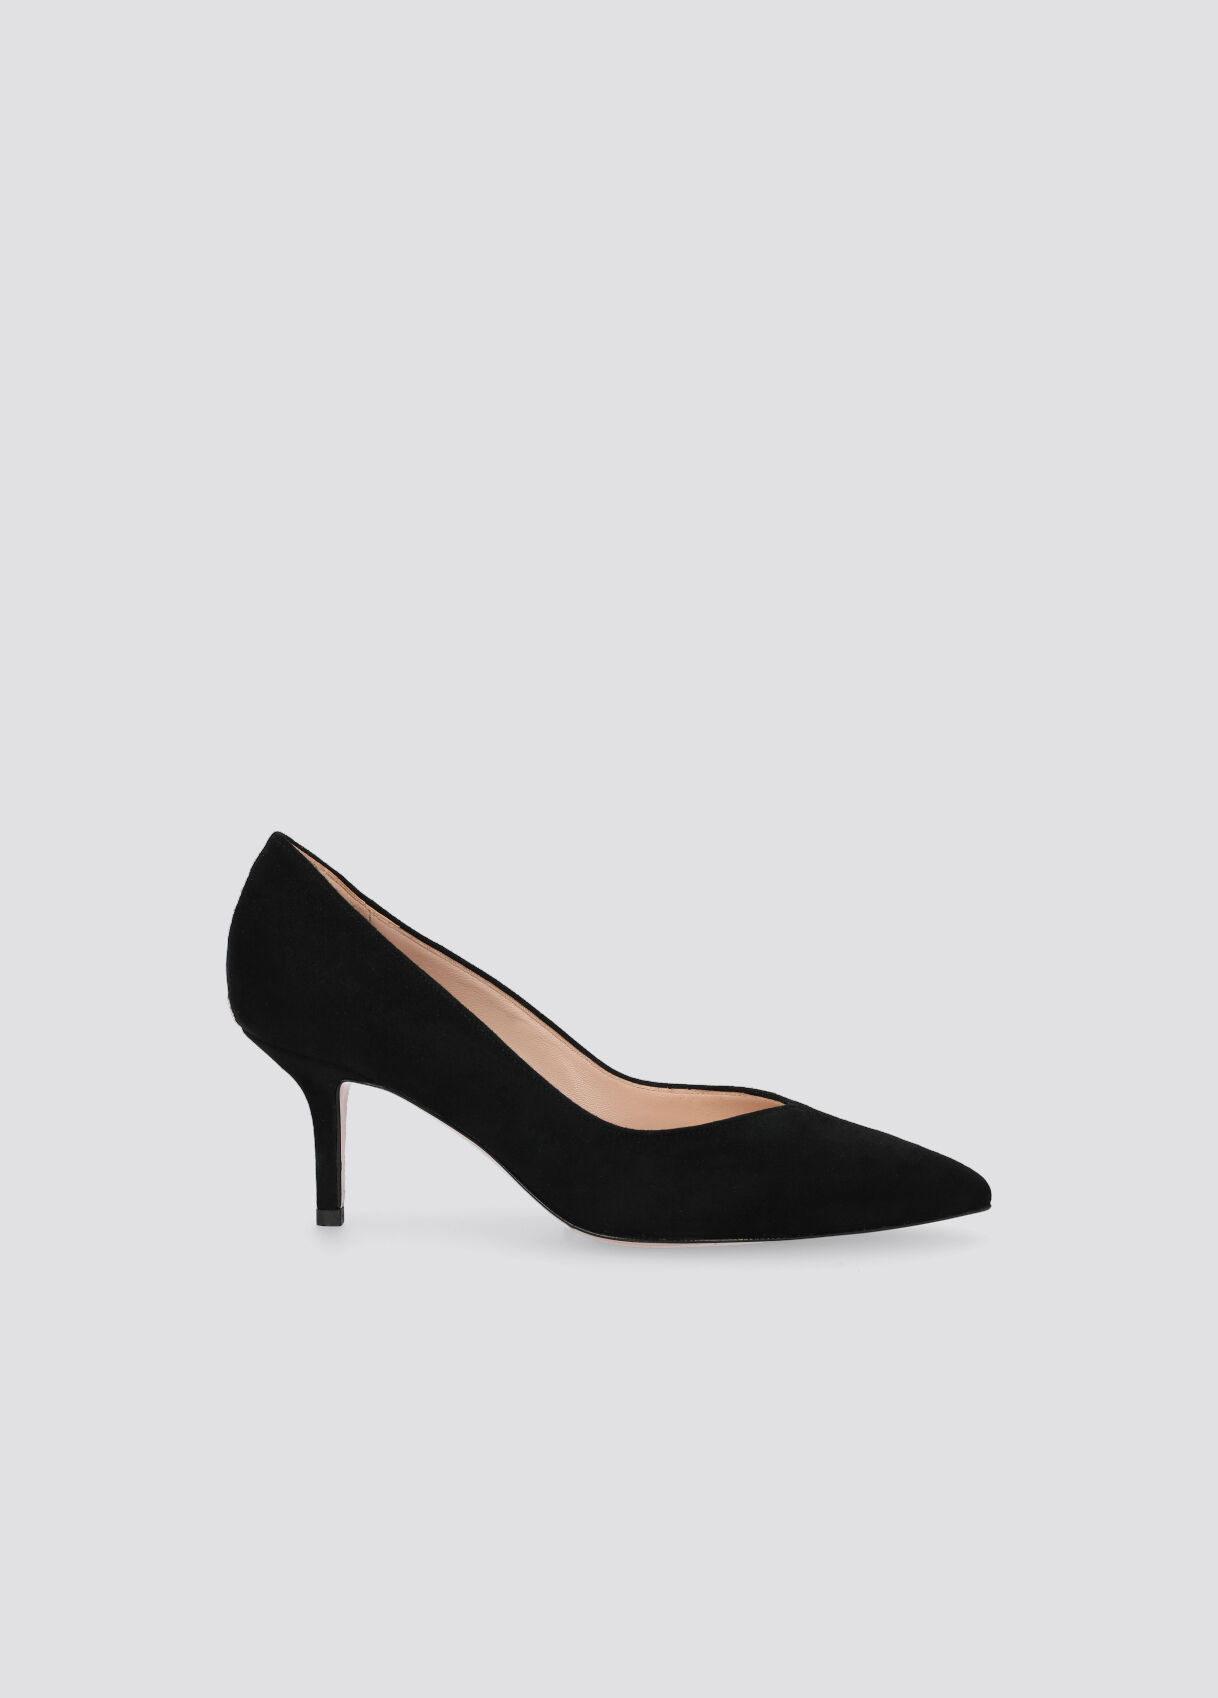 black stiletto shoes